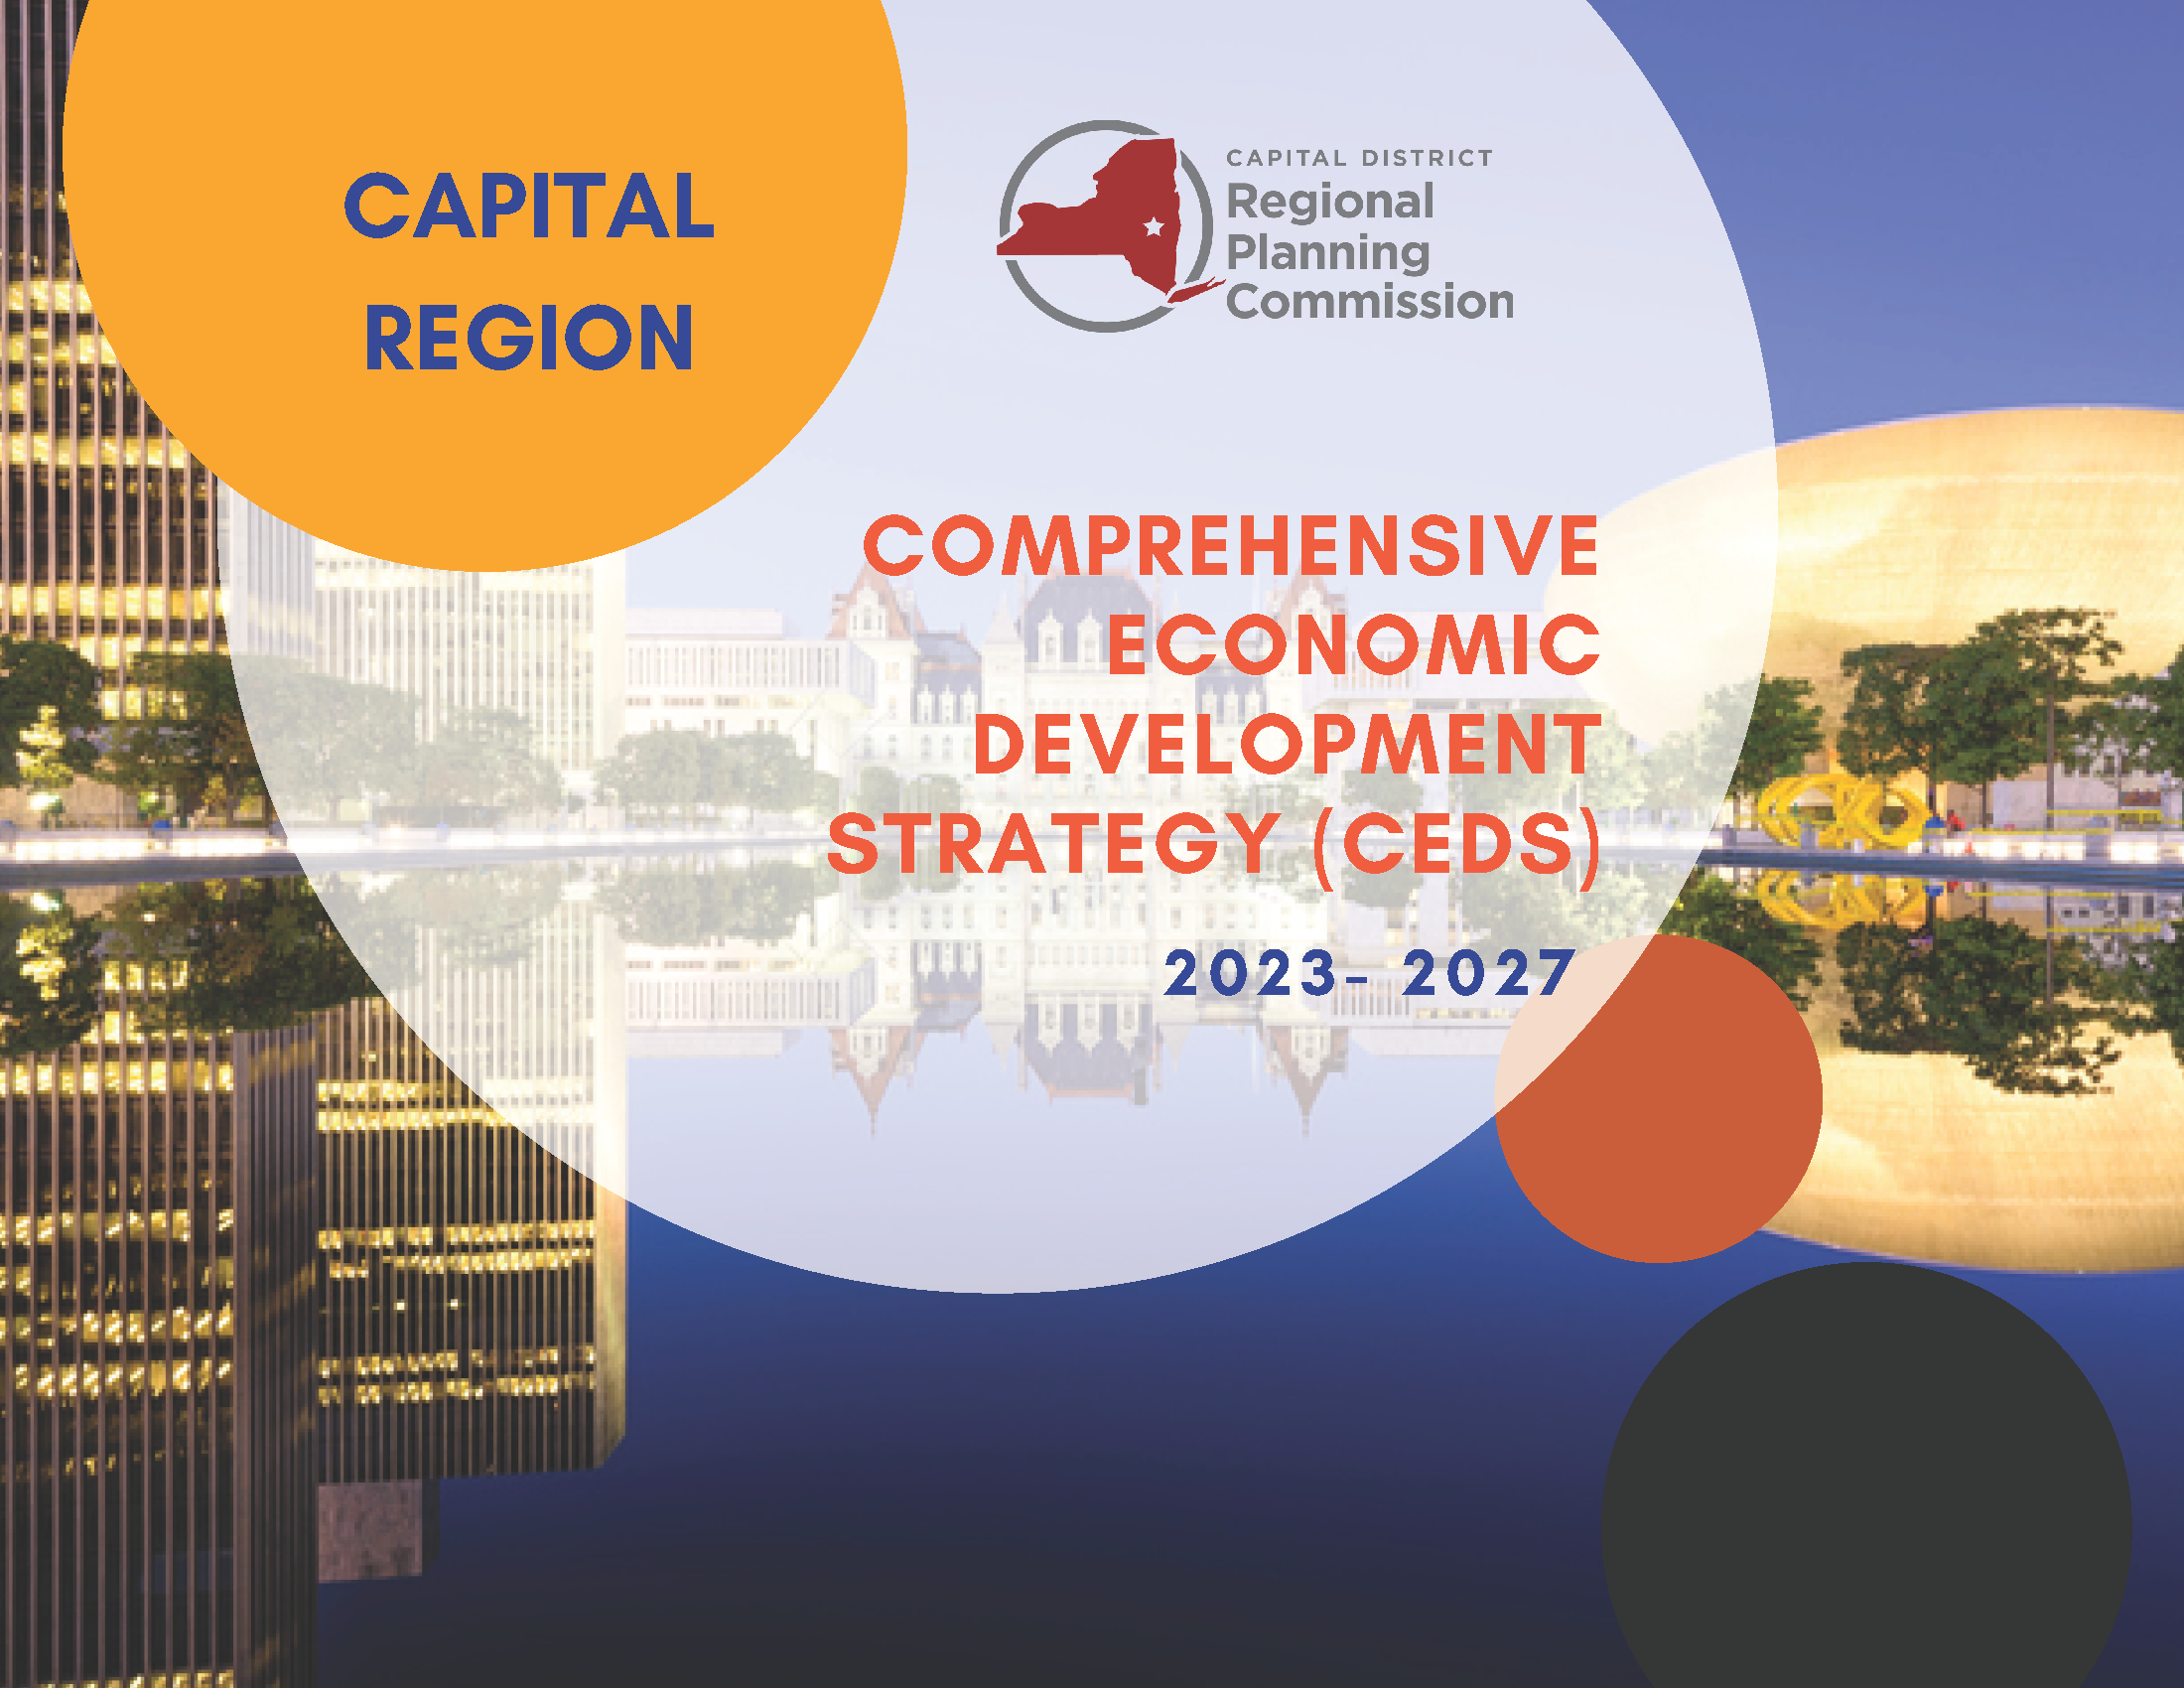 Comprehensive Economic Development Strategy (CEDS) Public Comment Period Open